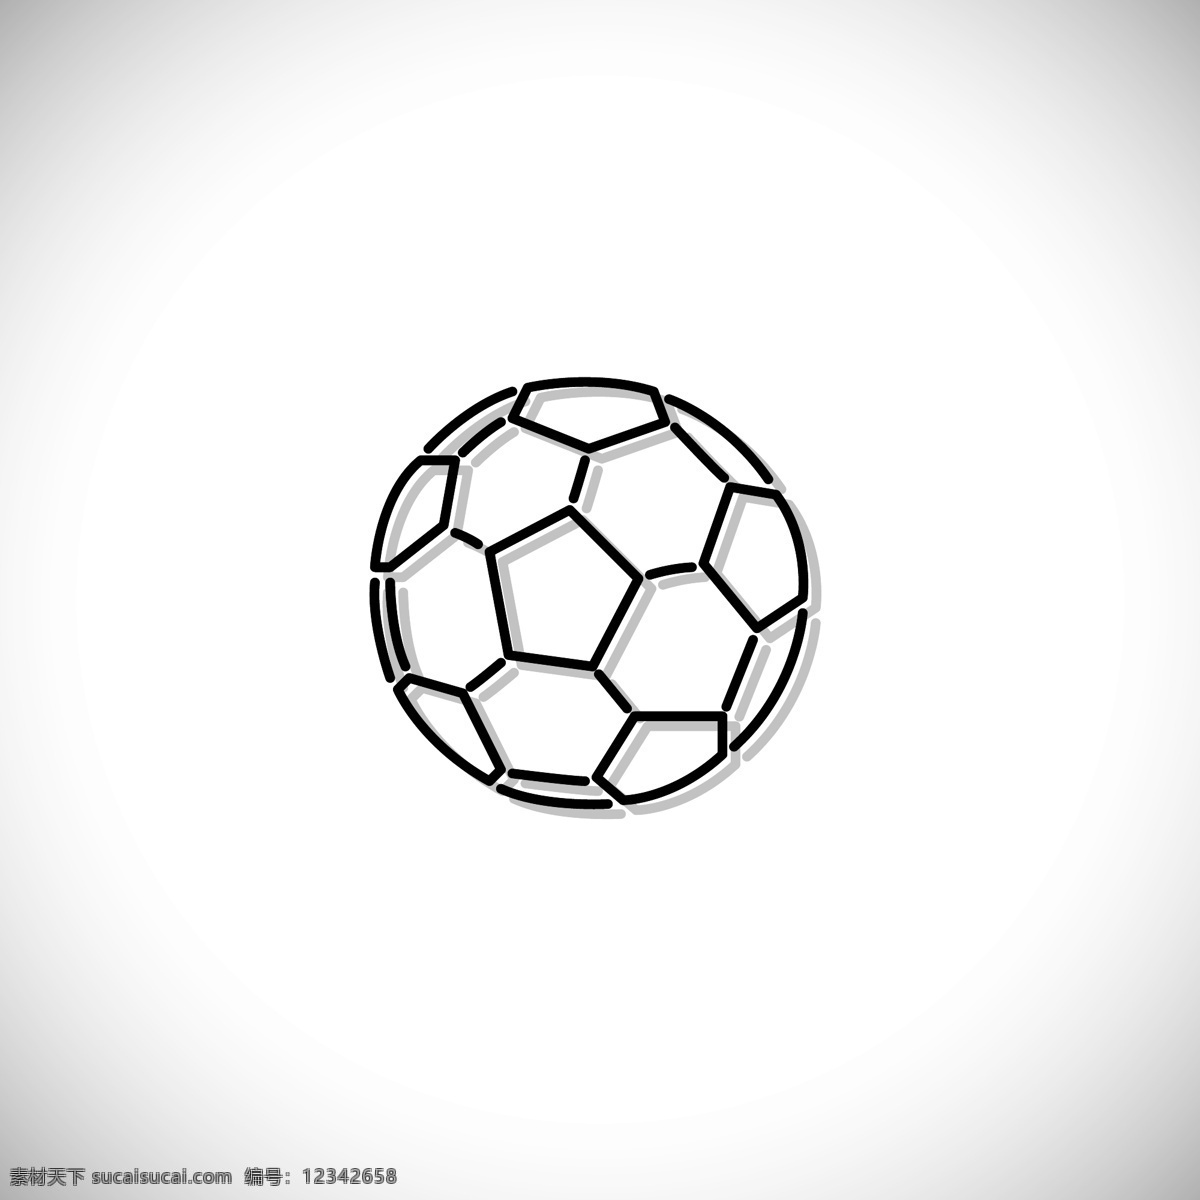 概述了足球 图标 足球 体育 游戏 球 比赛 游戏图标 设备 水平 概述 白色